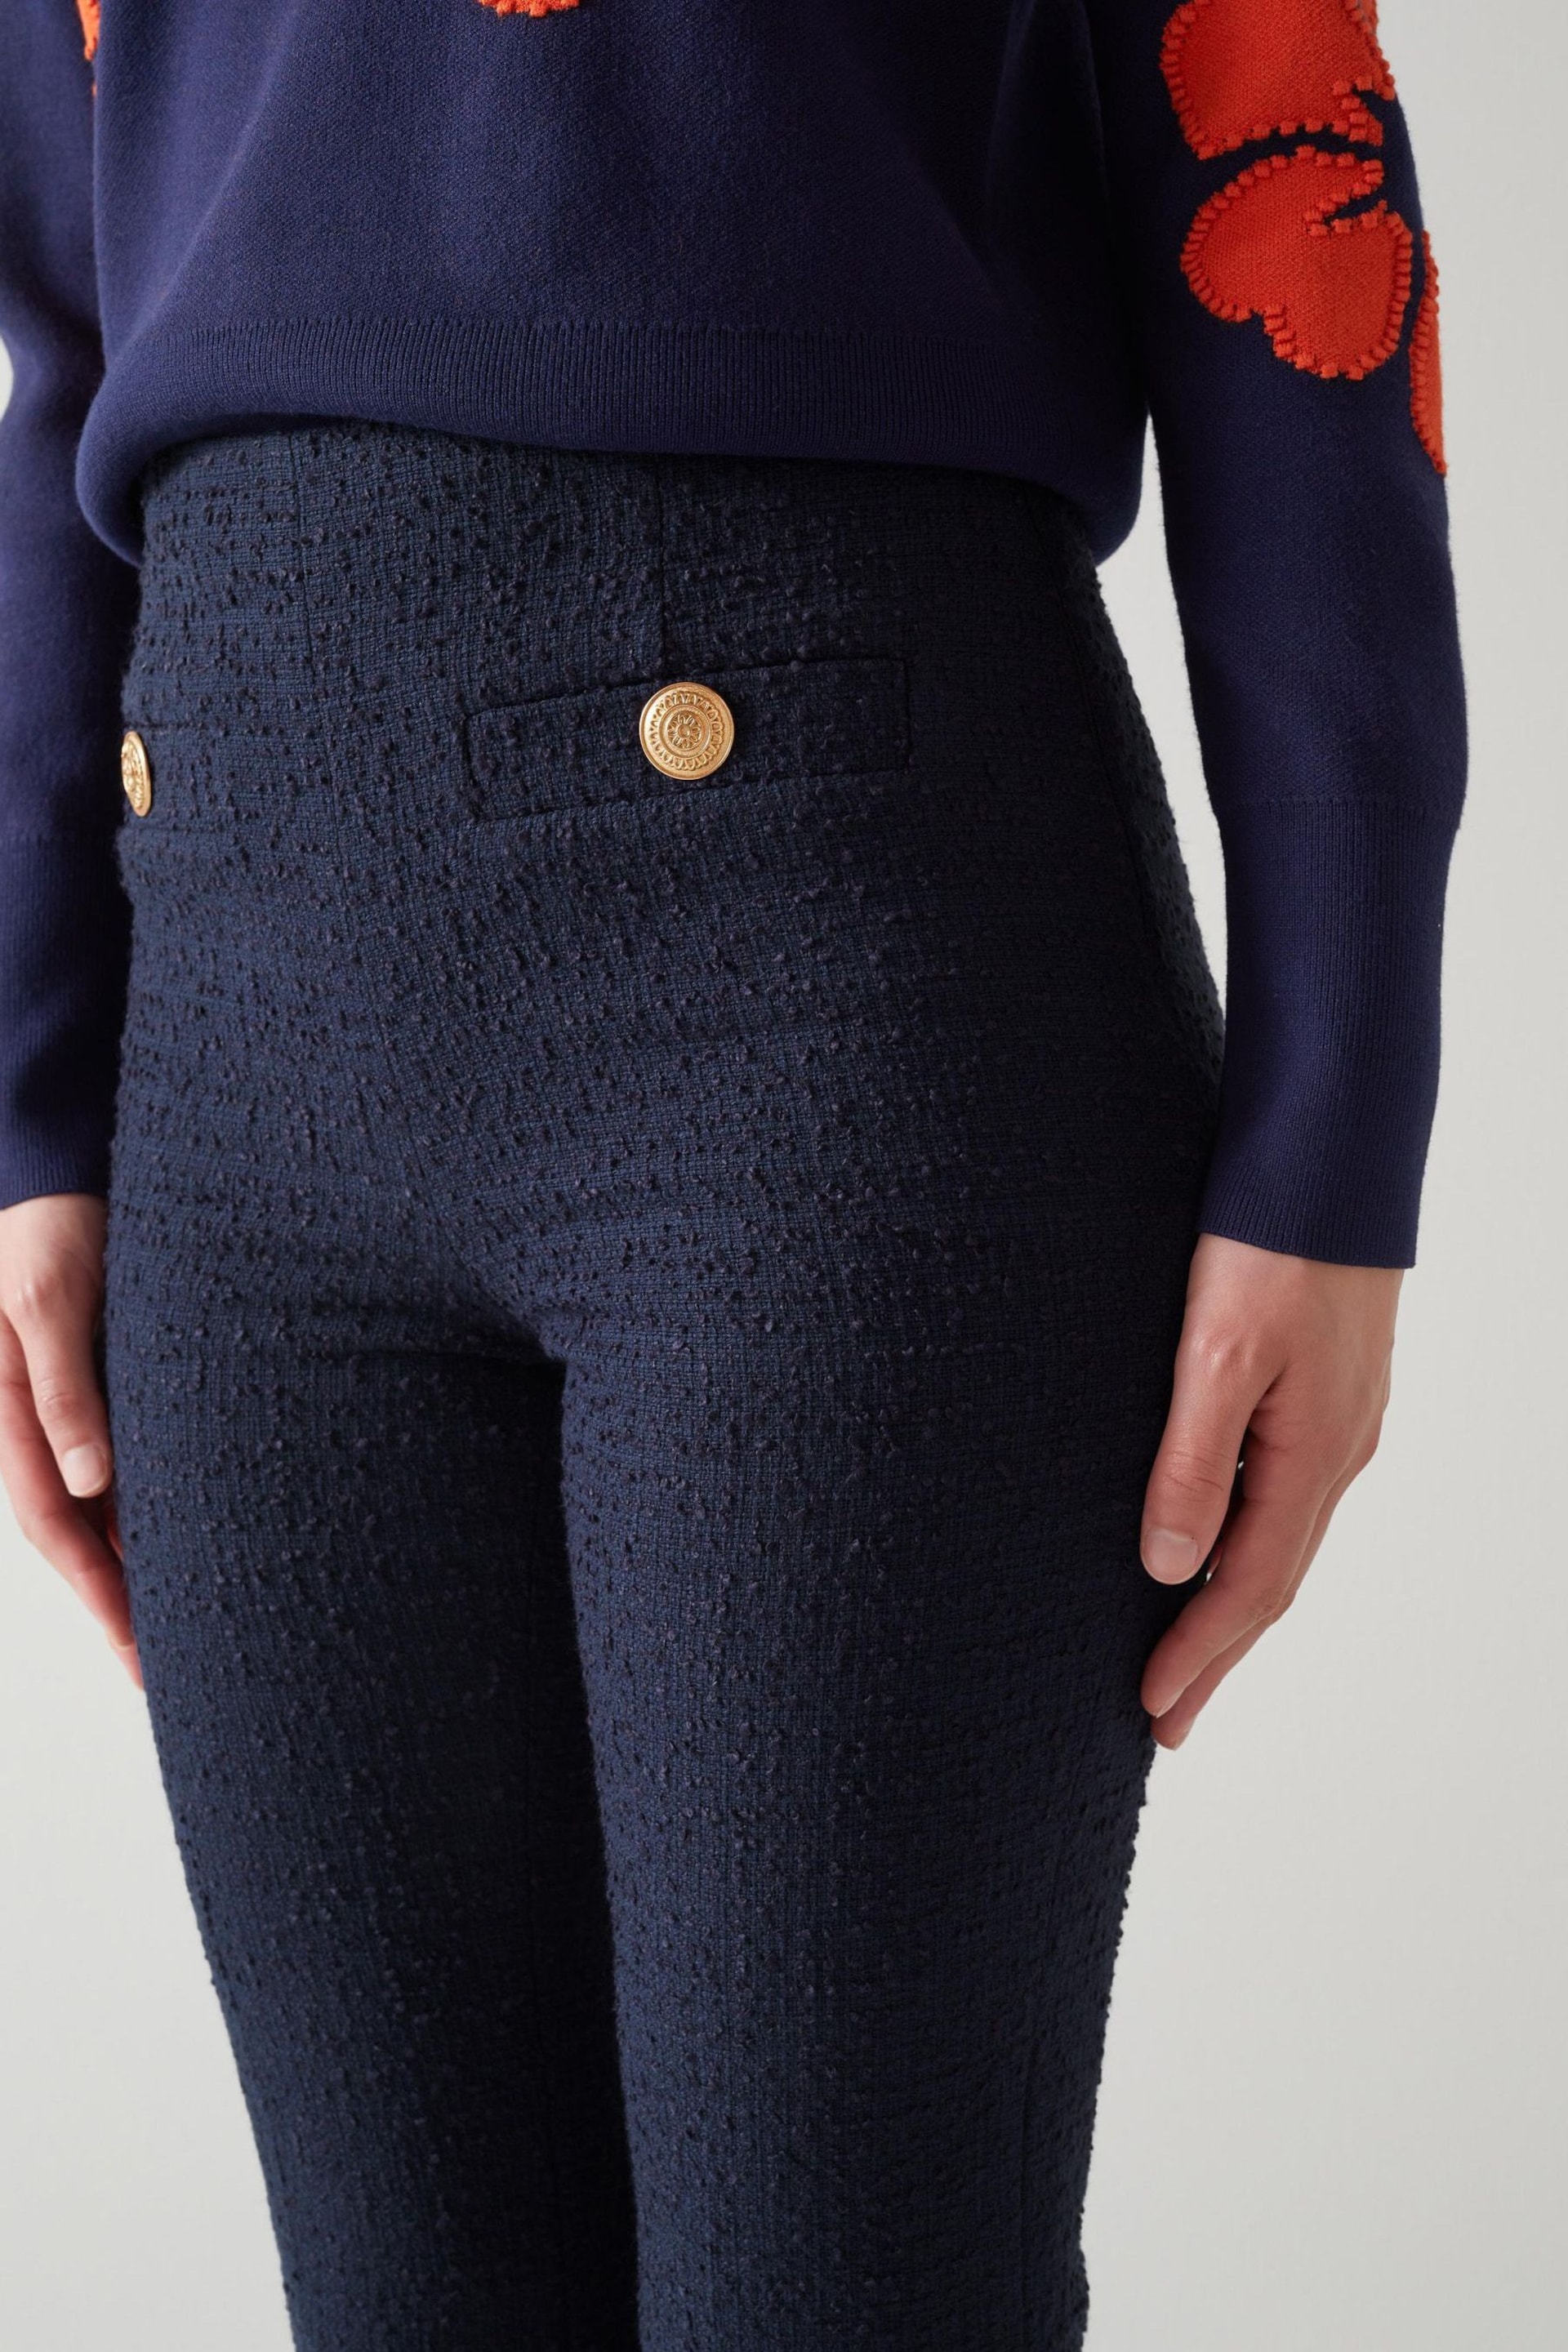 LK Bennett  Alexa Cotton Italian Tweed Trousers - Image 3 of 4